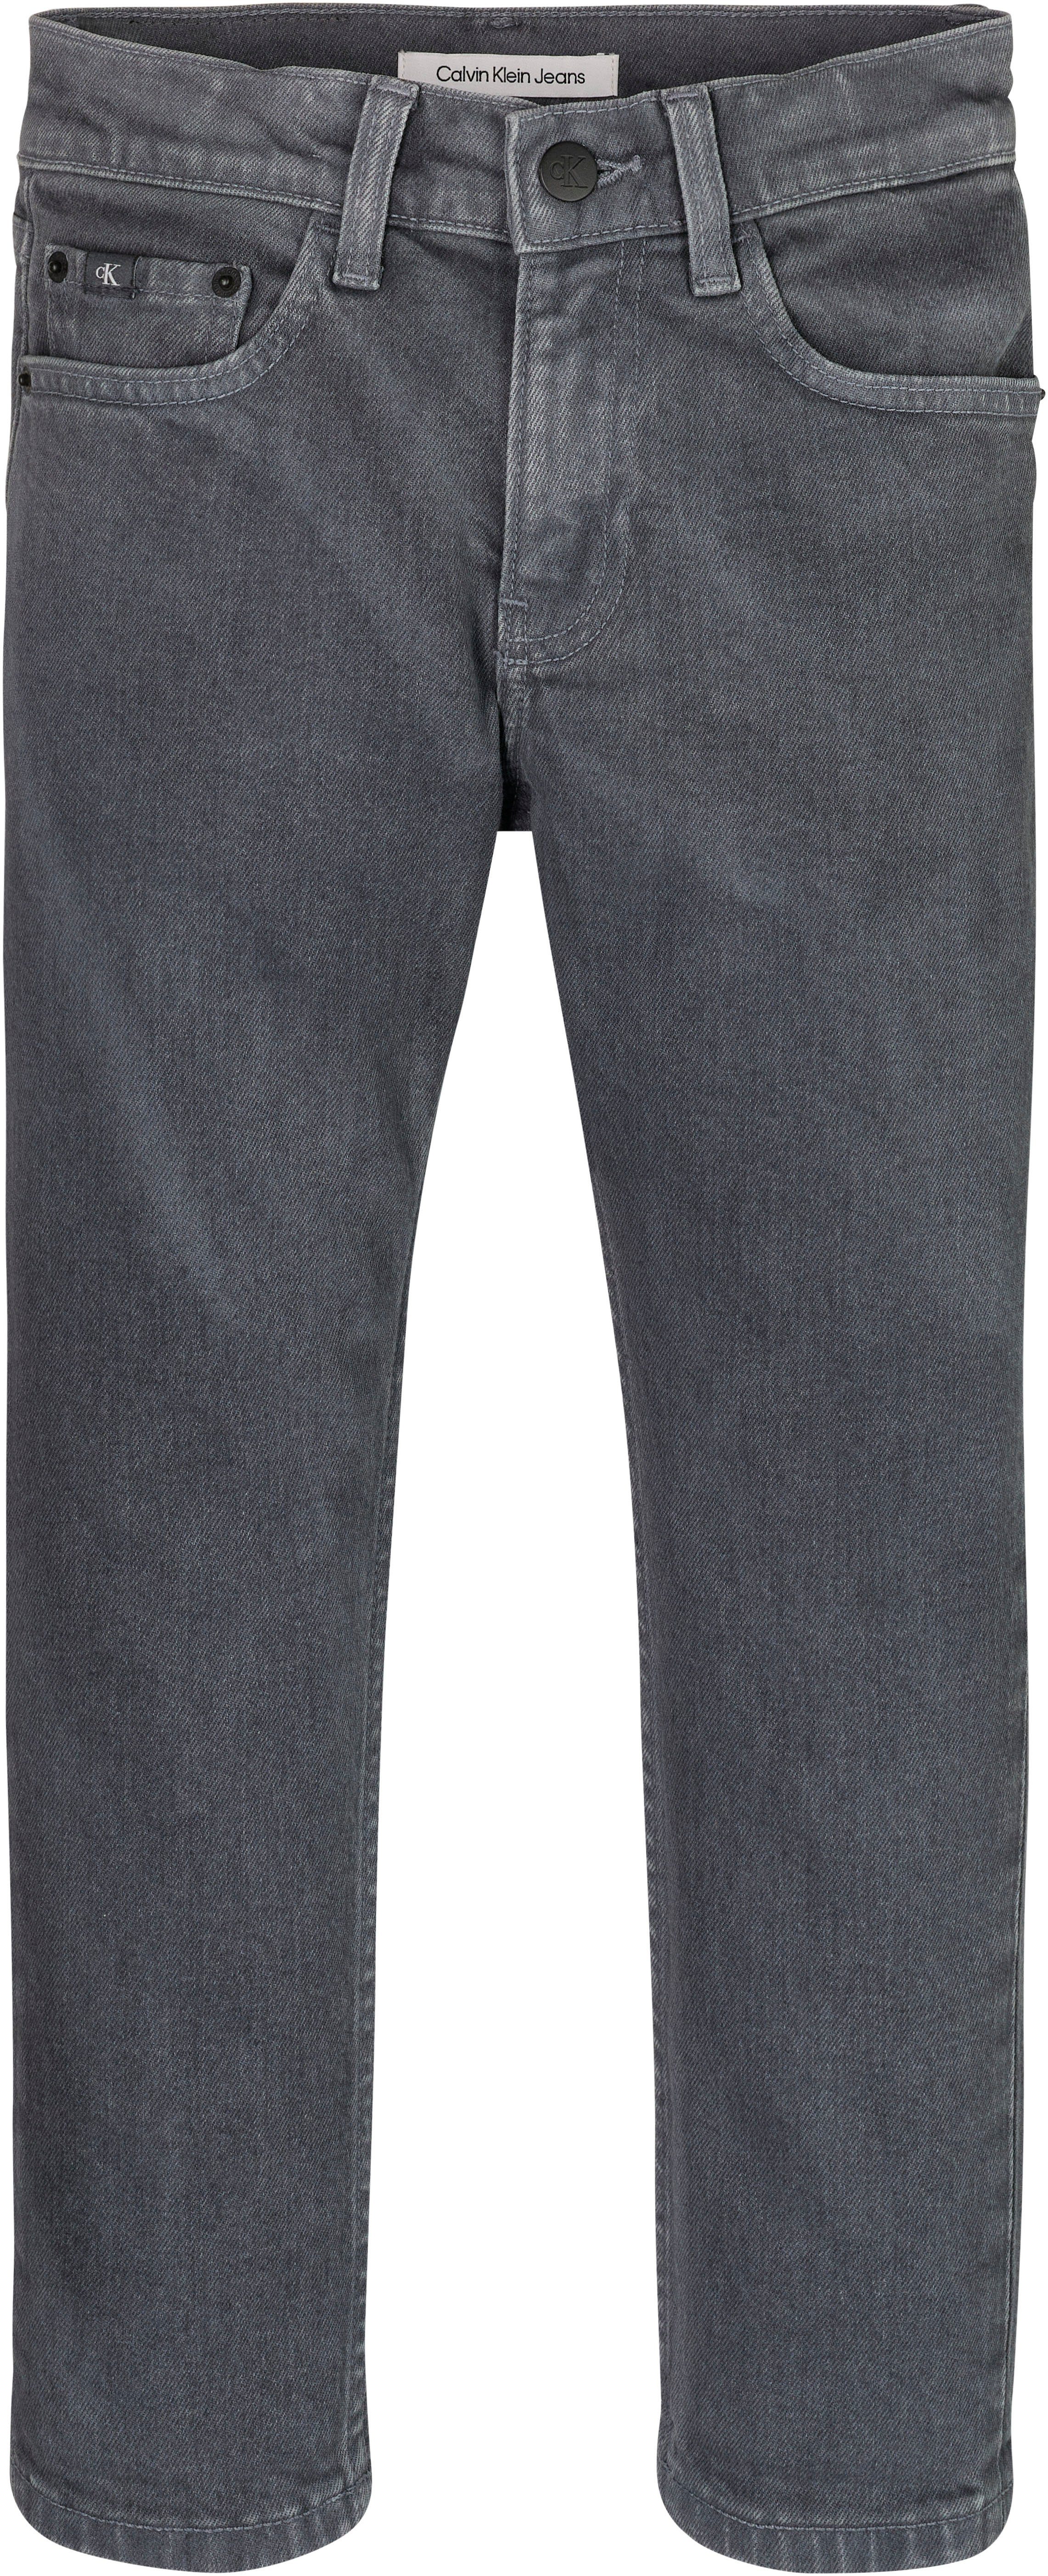 Klein Stretch-Jeans OVERDYED GREY DAD Jeans DARK Calvin